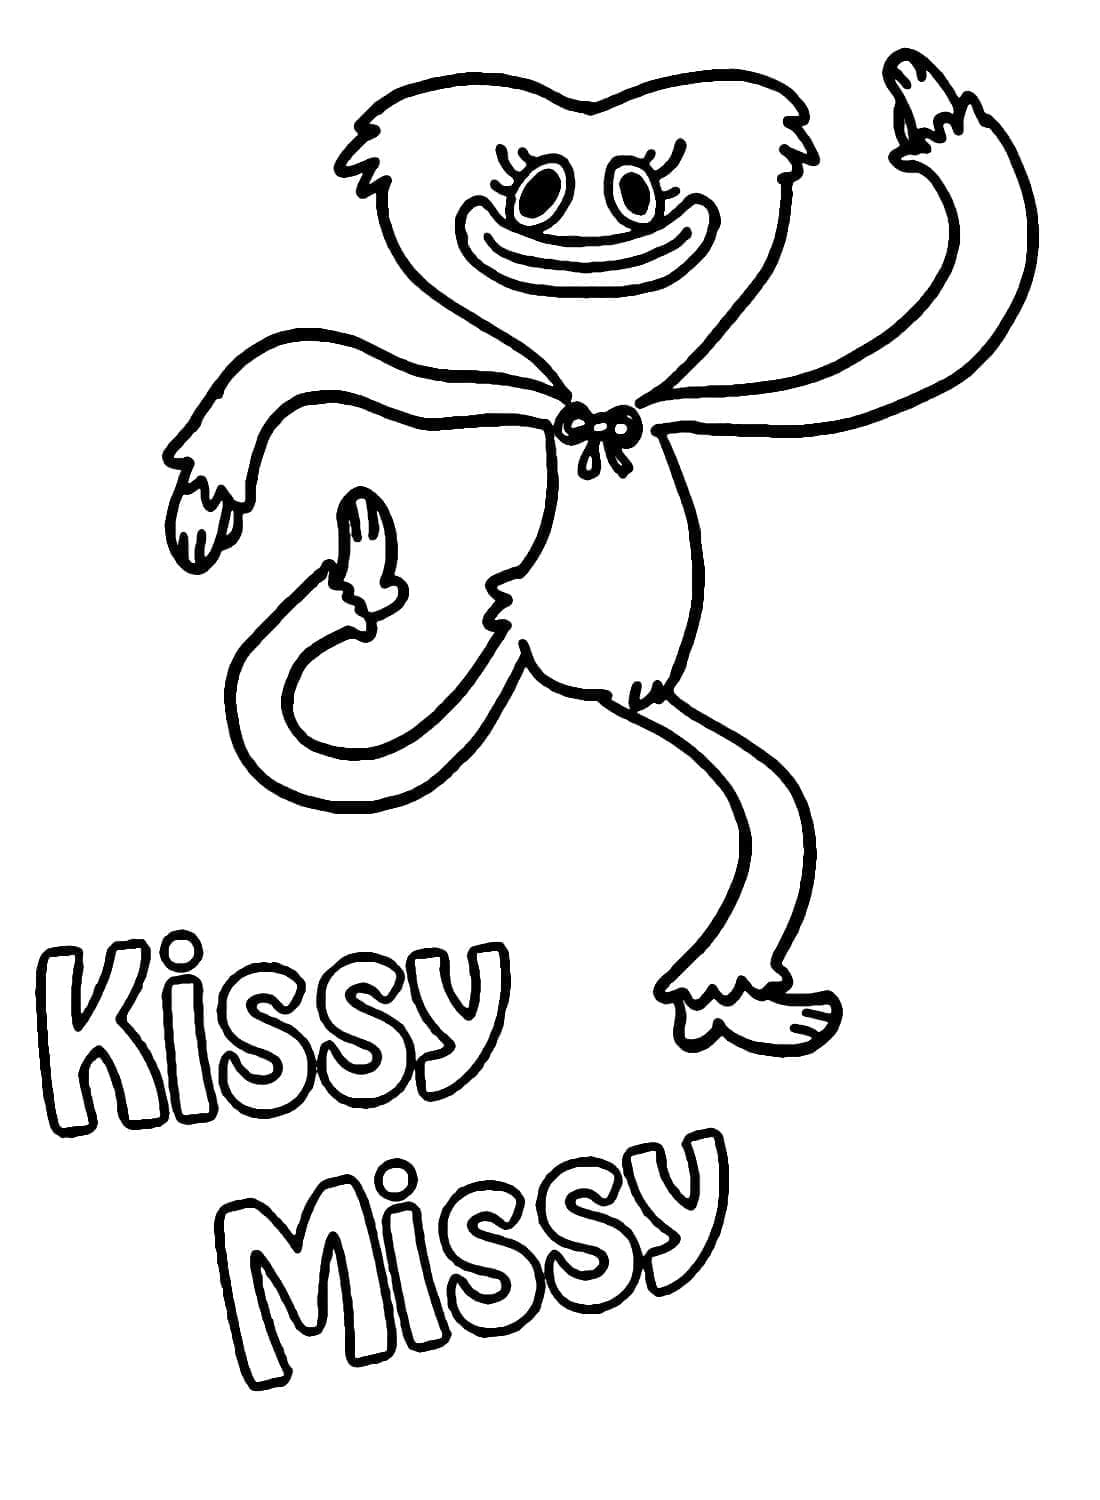 Kissy Missy în poppy playtime